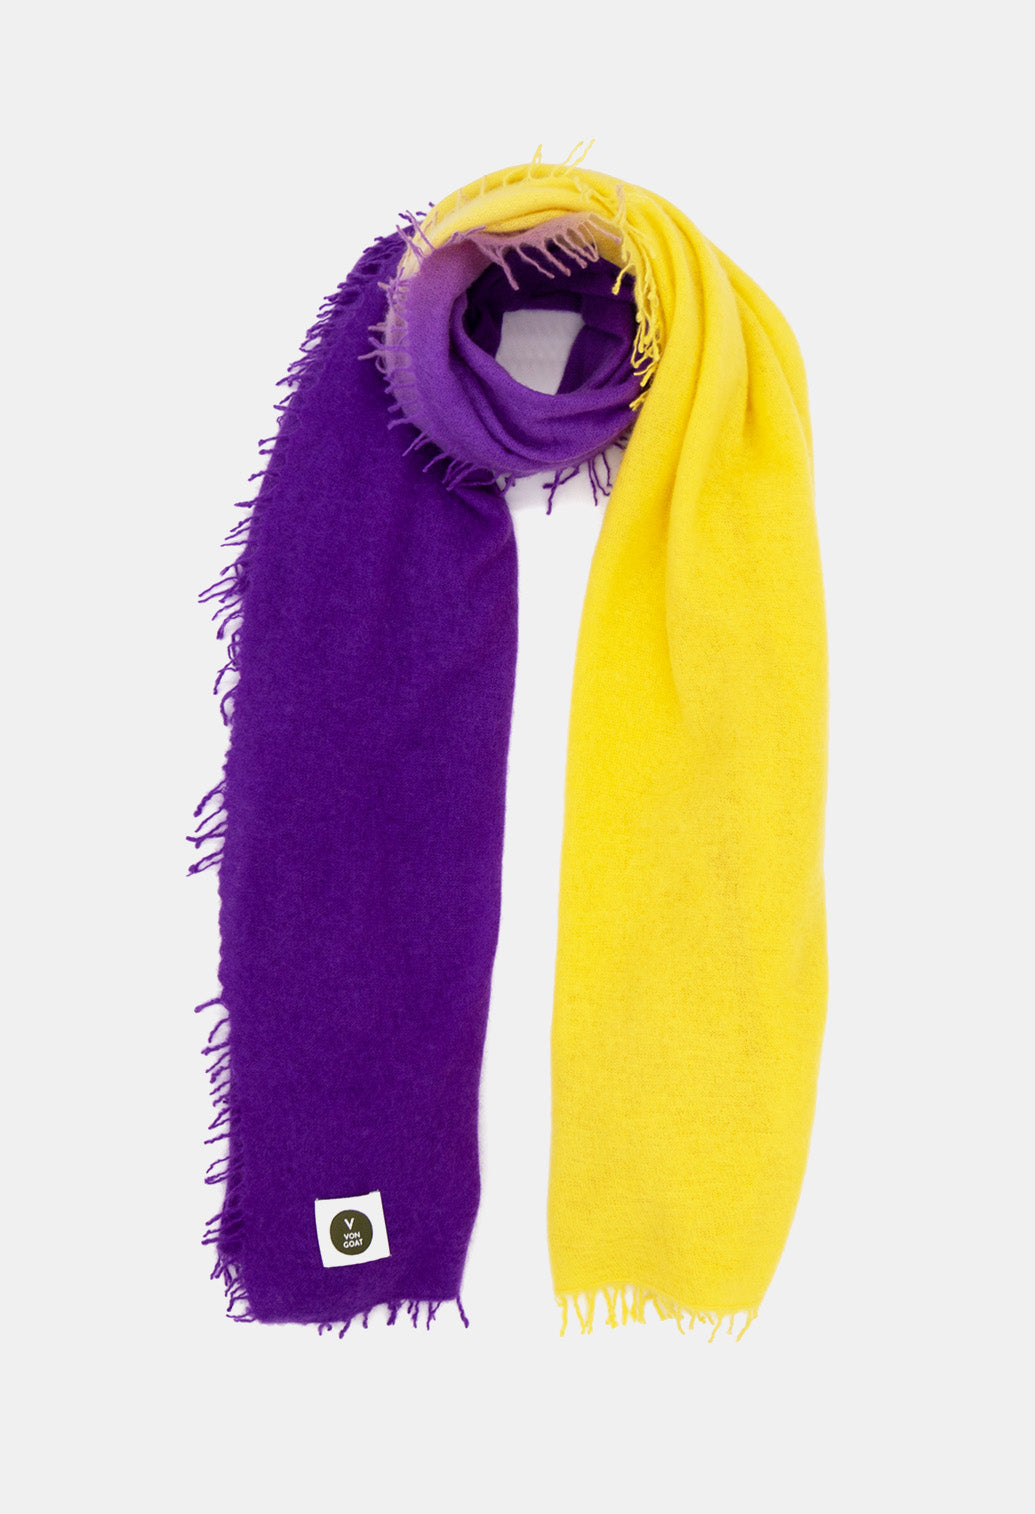 V Von Goat Kaschmir-Schal mit Fransen im Tiedye-Stil in den Farben Neon Lila und Gelb aus reiner Cashmere-Wolle auf weißem Untergrund.